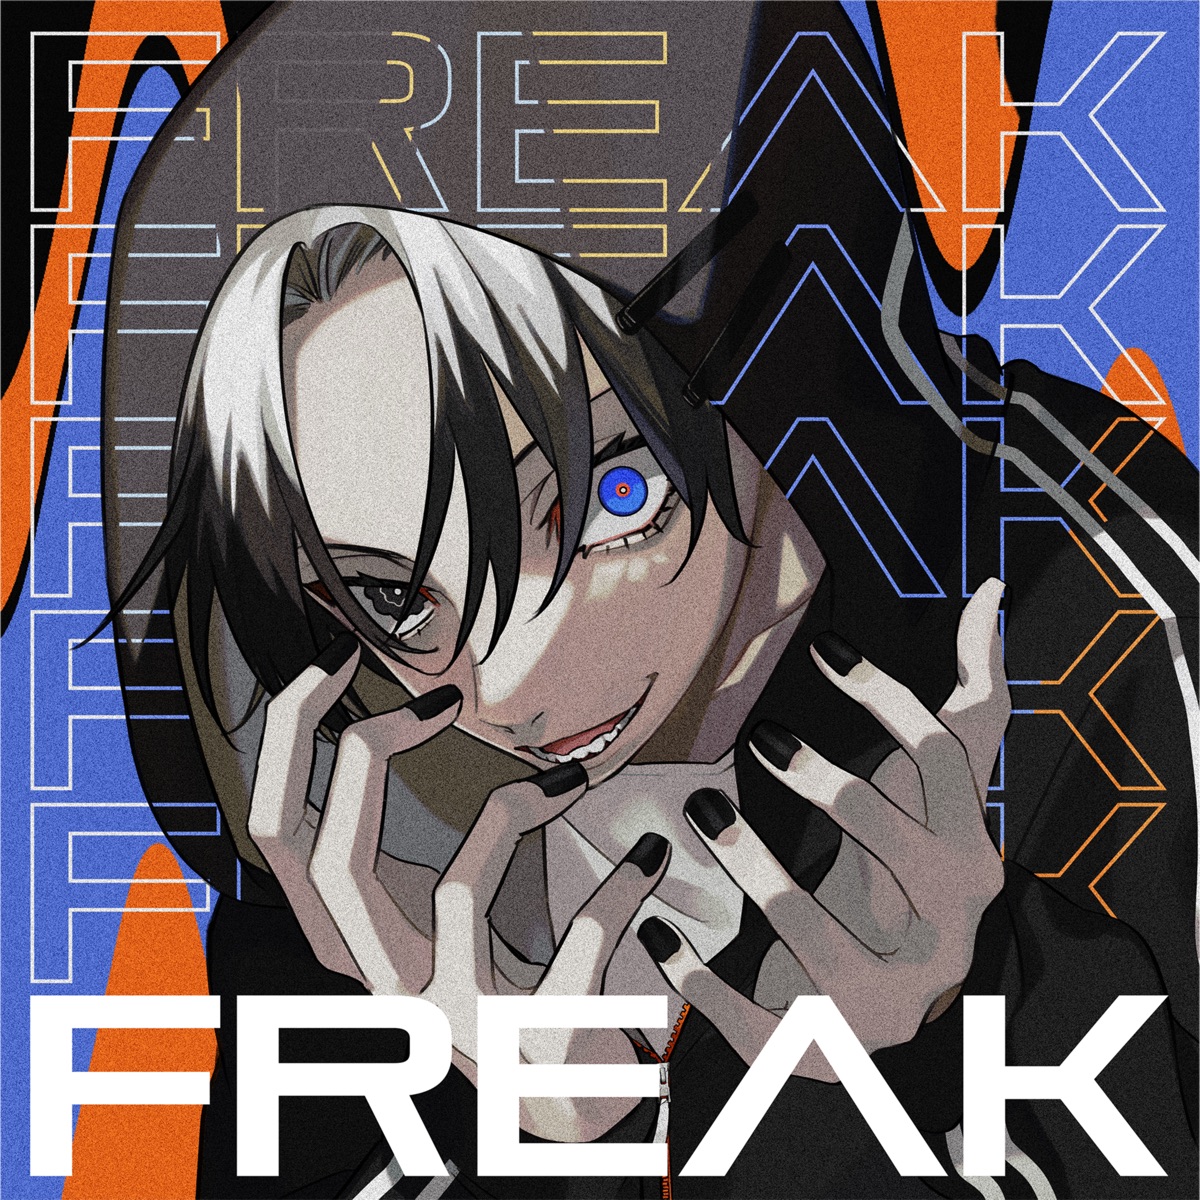 『jon-YAKITORY & 八王子P - FREAK feat. Yupman』収録の『FREAK feat. Yupman』ジャケット